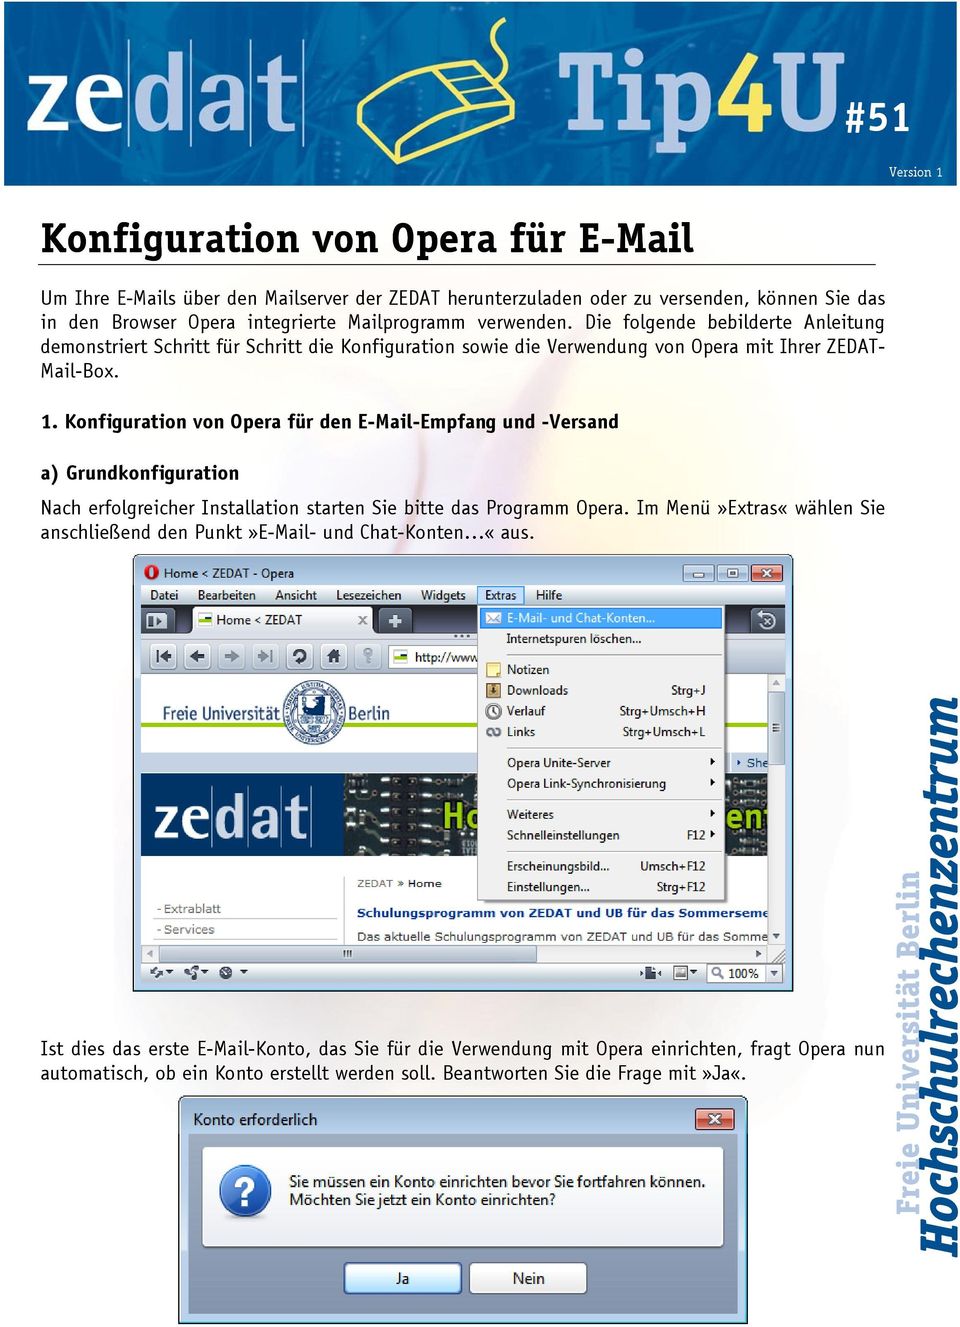 Konfiguration von Opera für den E-Mail-Empfang und -Versand a) Grundkonfiguration Nach erfolgreicher Installation starten Sie bitte das Programm Opera.